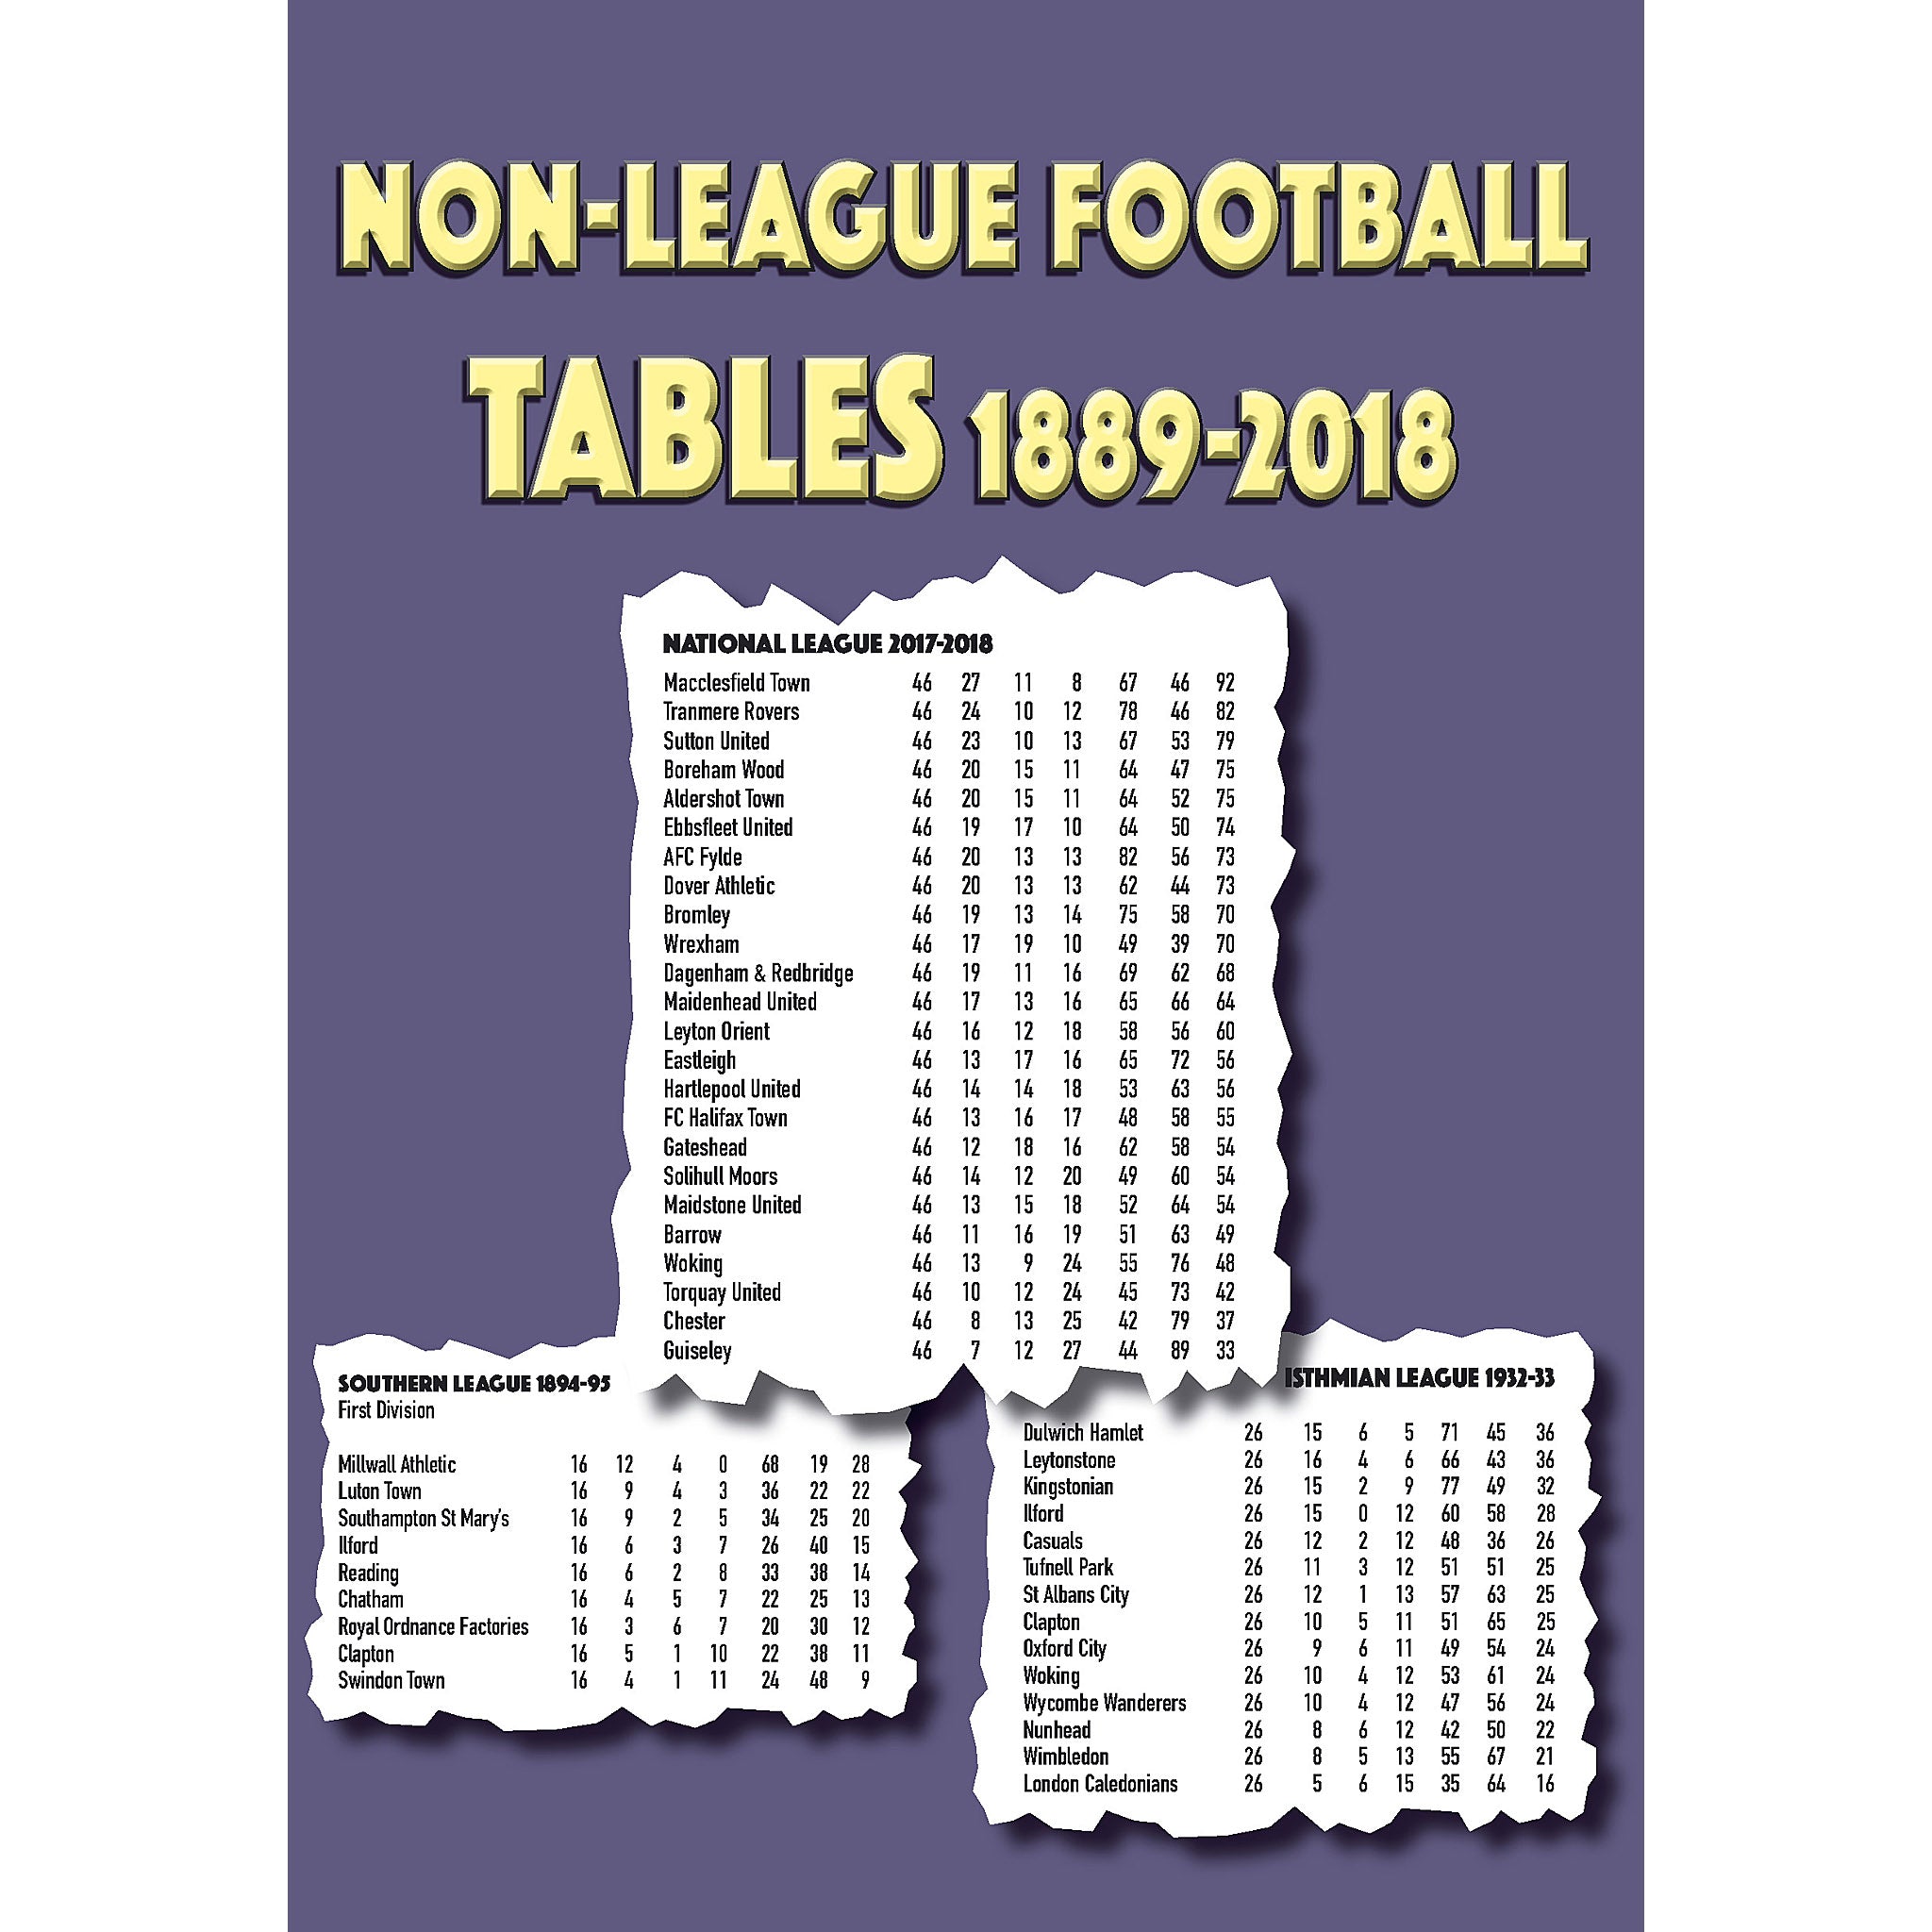 Non-League Football Tables 1889-2018